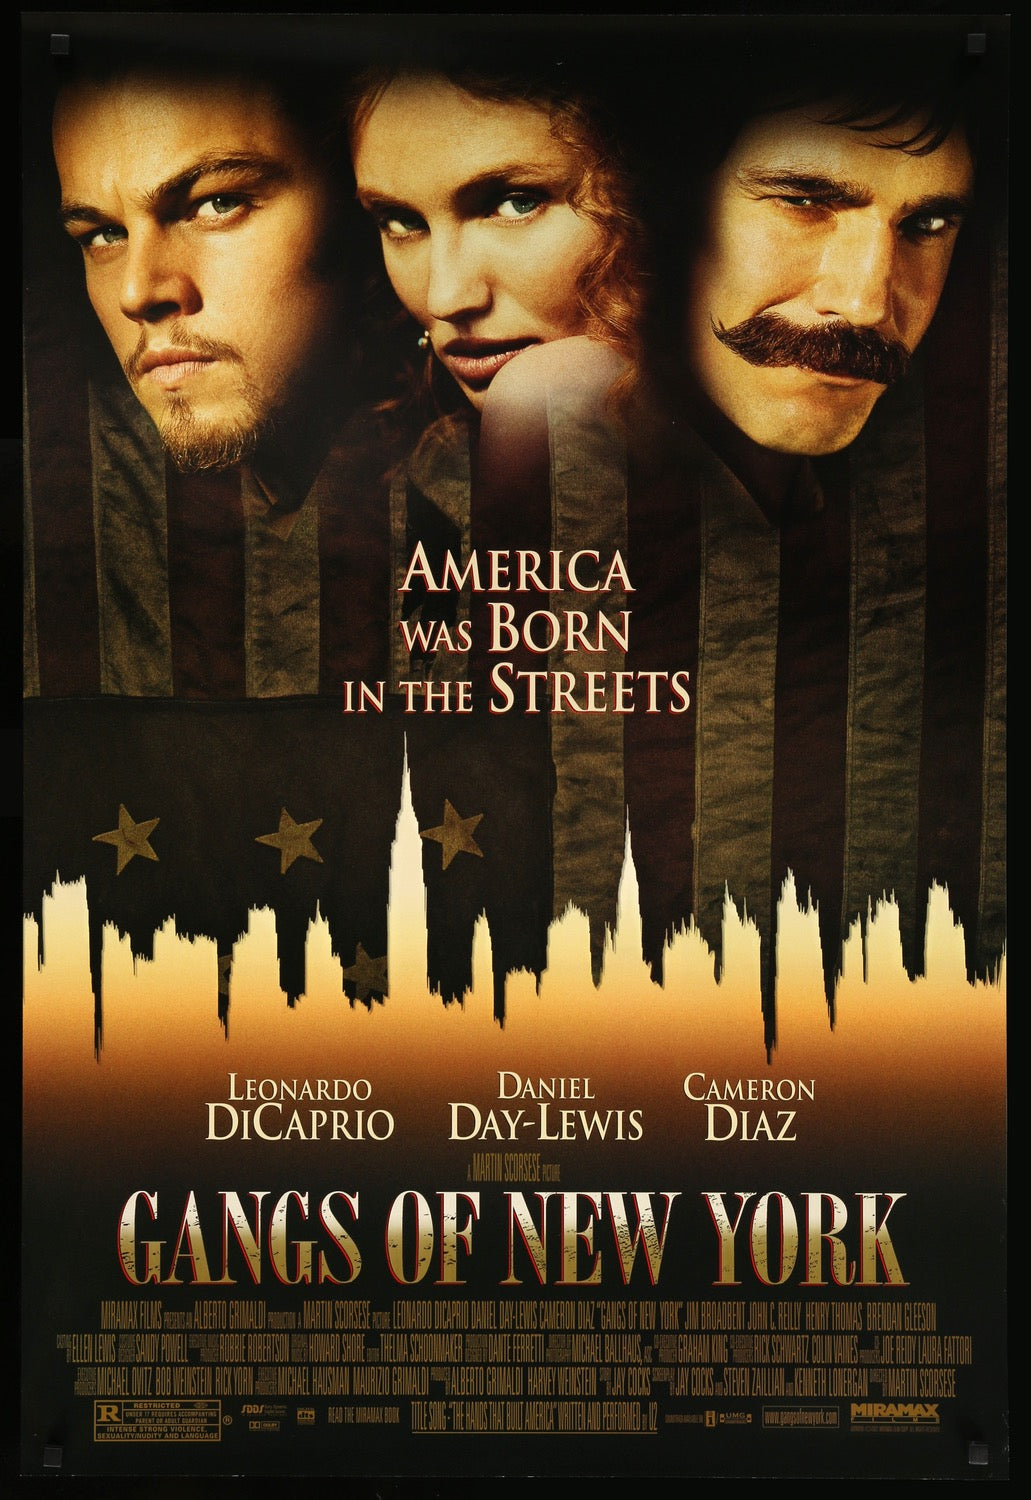 Gangs of New York (2002) original movie poster for sale at Original Film Art